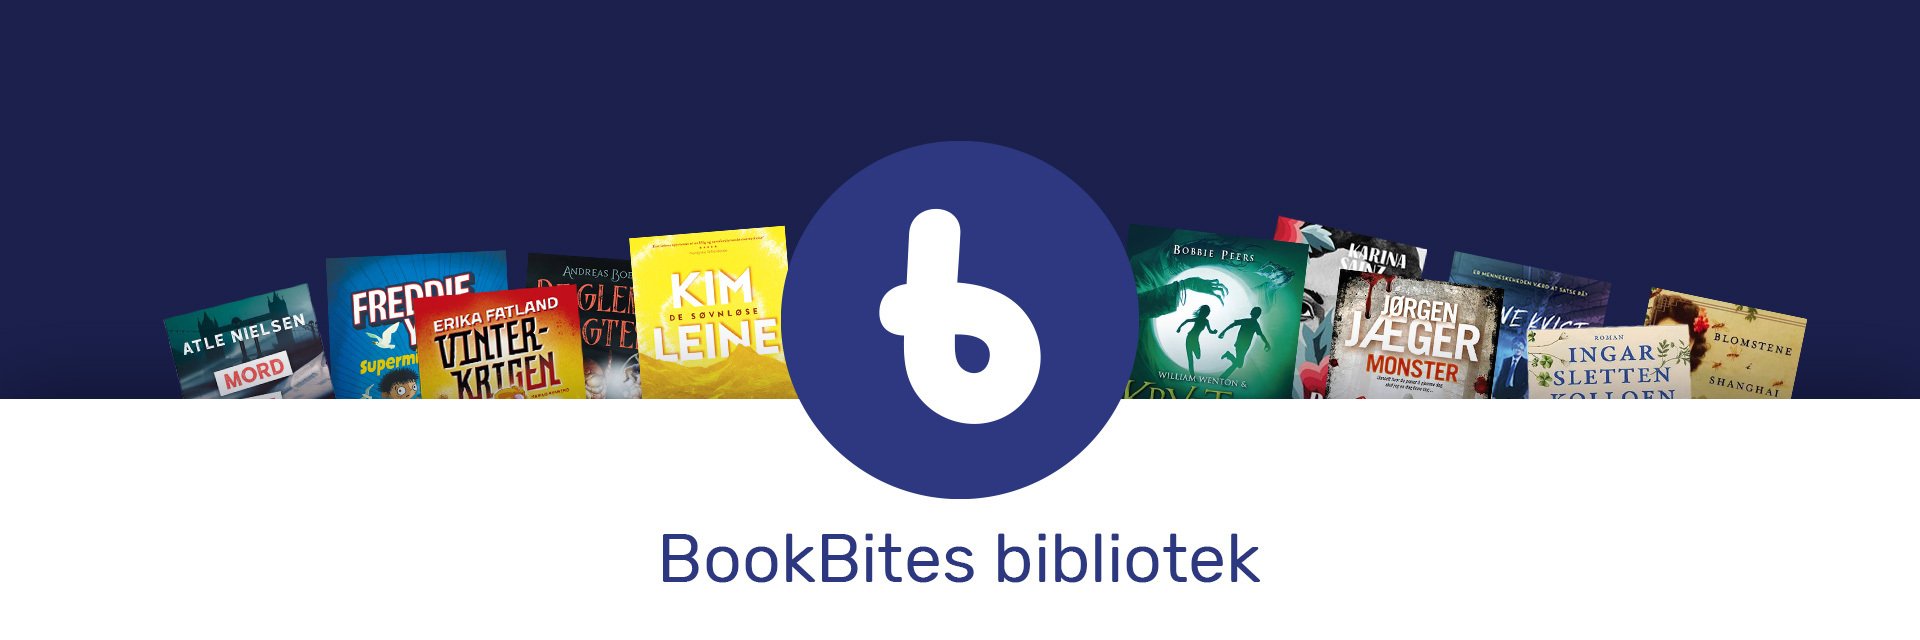 BookBites-bibliotek-spot-web